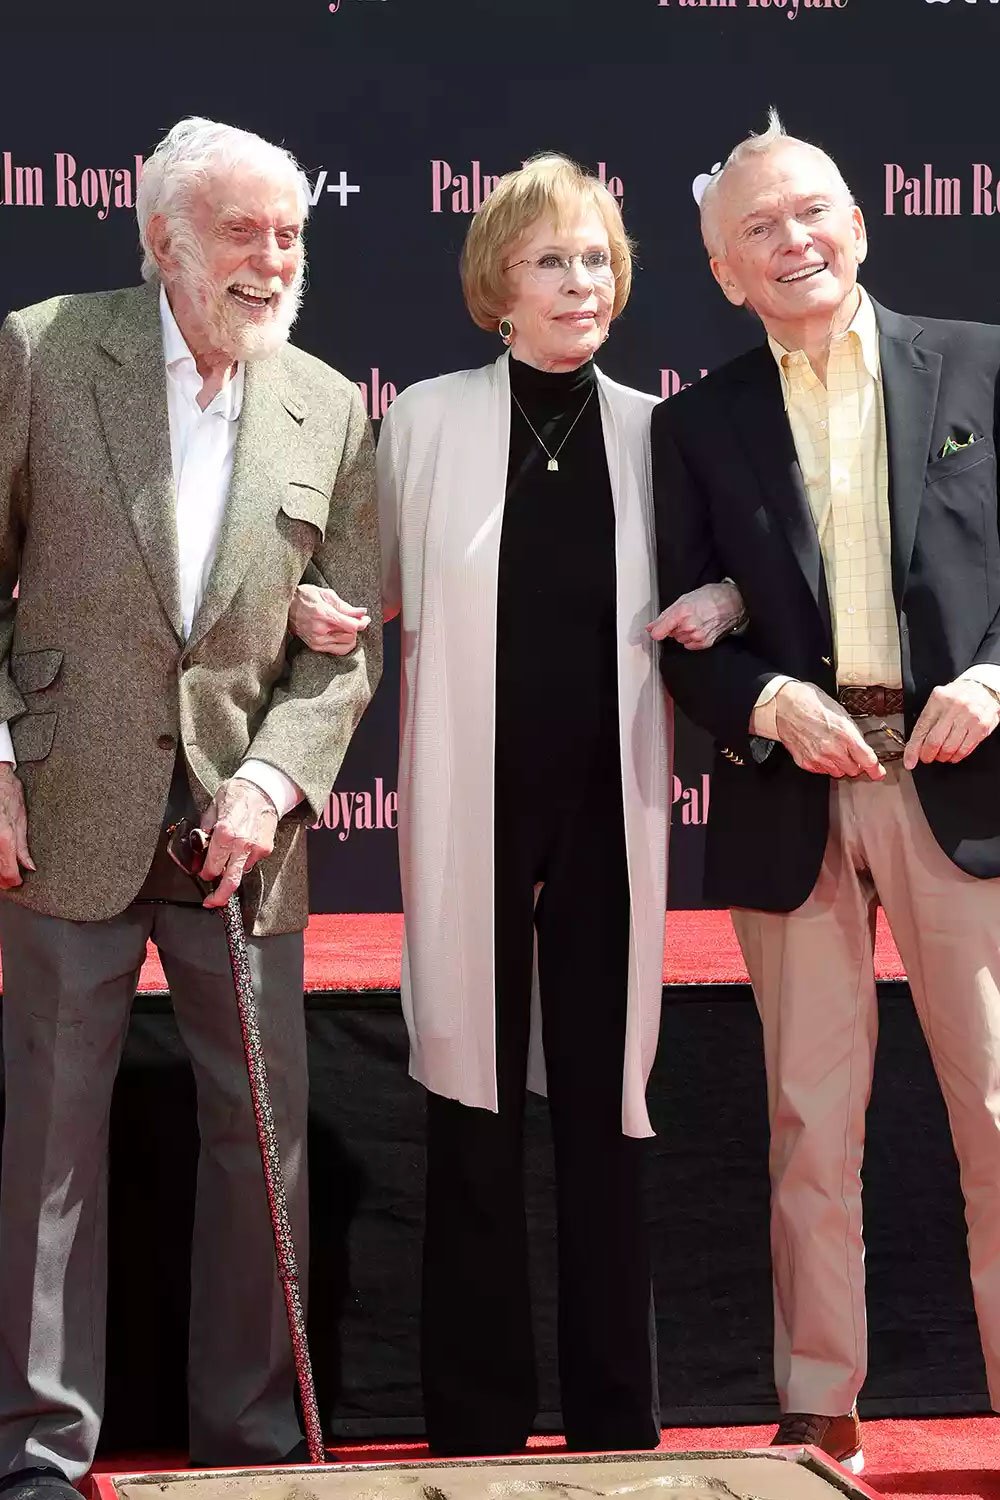 Dick Van Dyke reunites with Carol Burnett at milestone event